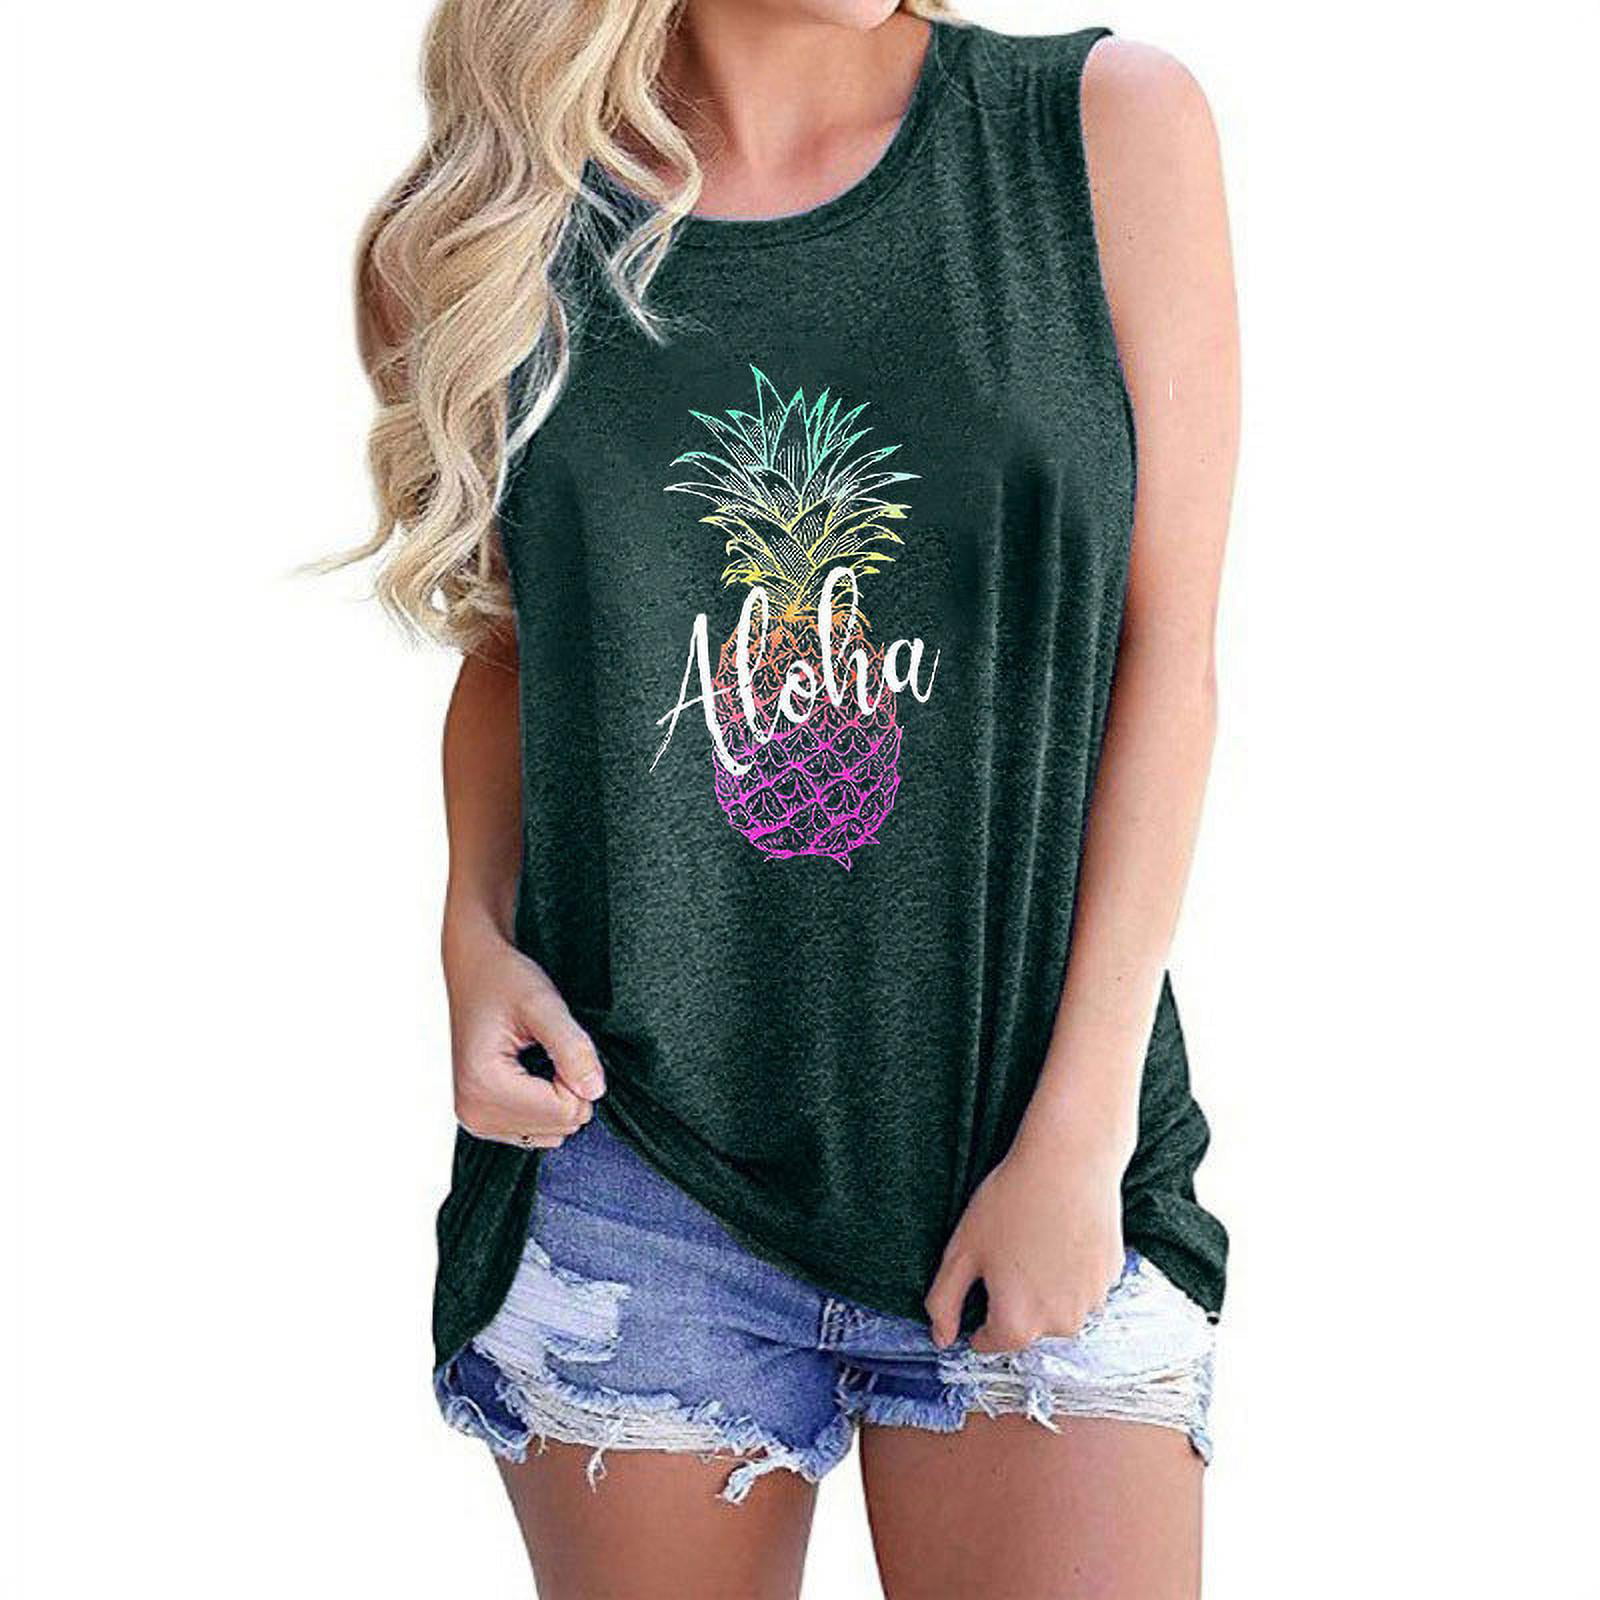 Aloha Beaches Letter Tank Top Women Pineapple Print Sleeveless T Shirt Cute Vest Summer Beach Casual Tee Shirt 